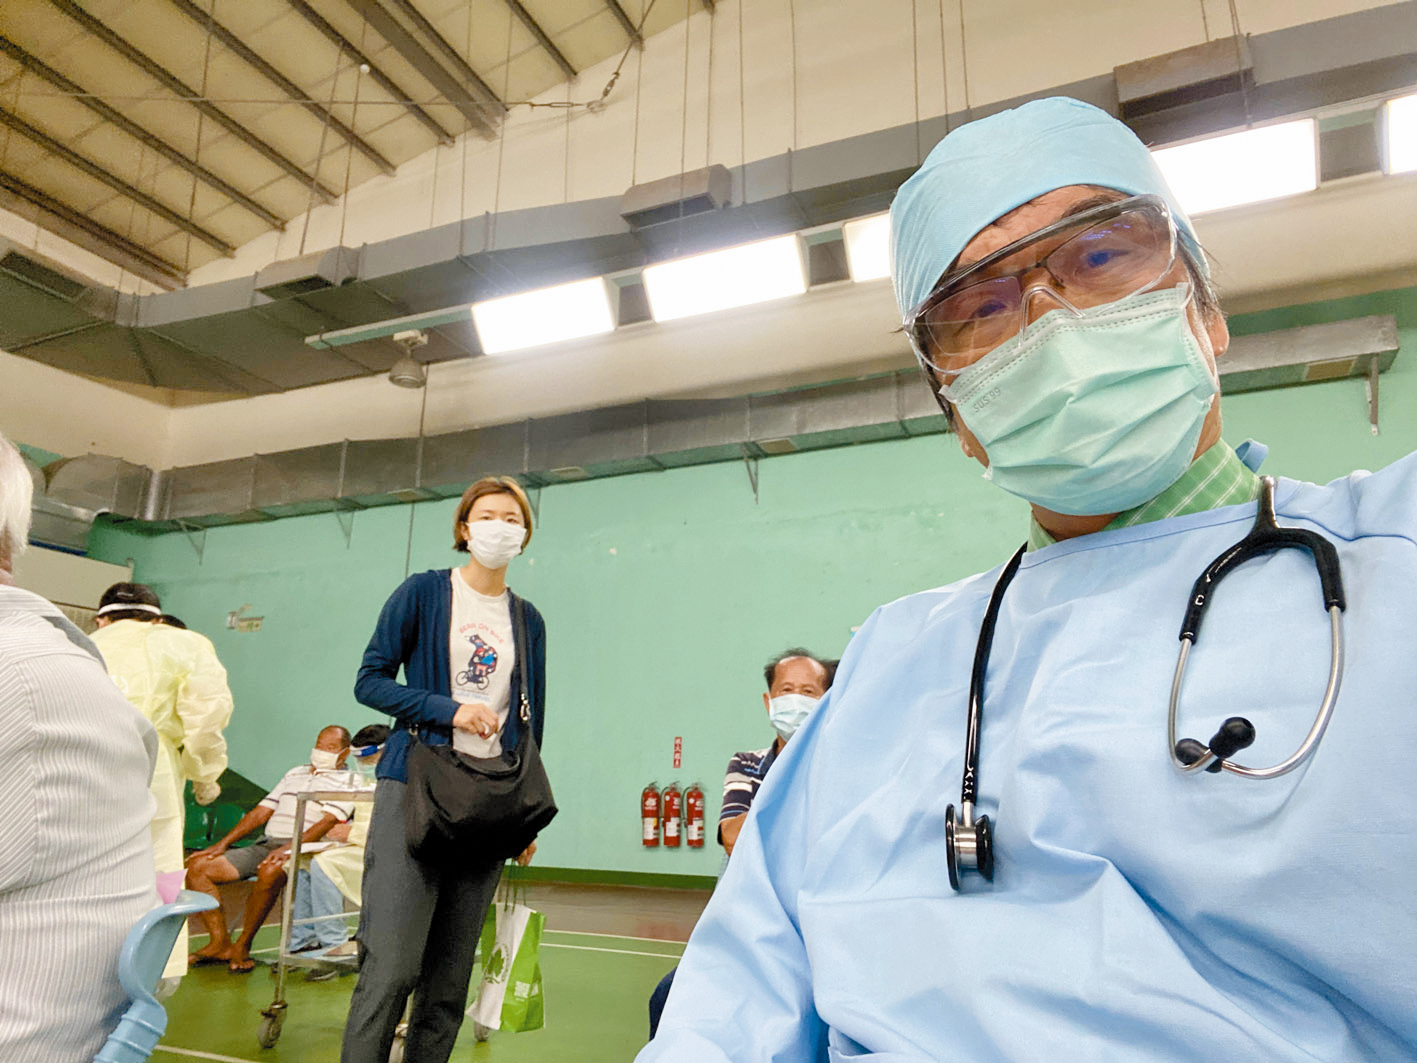 田春生醫生參與協助長輩疫苗接種。